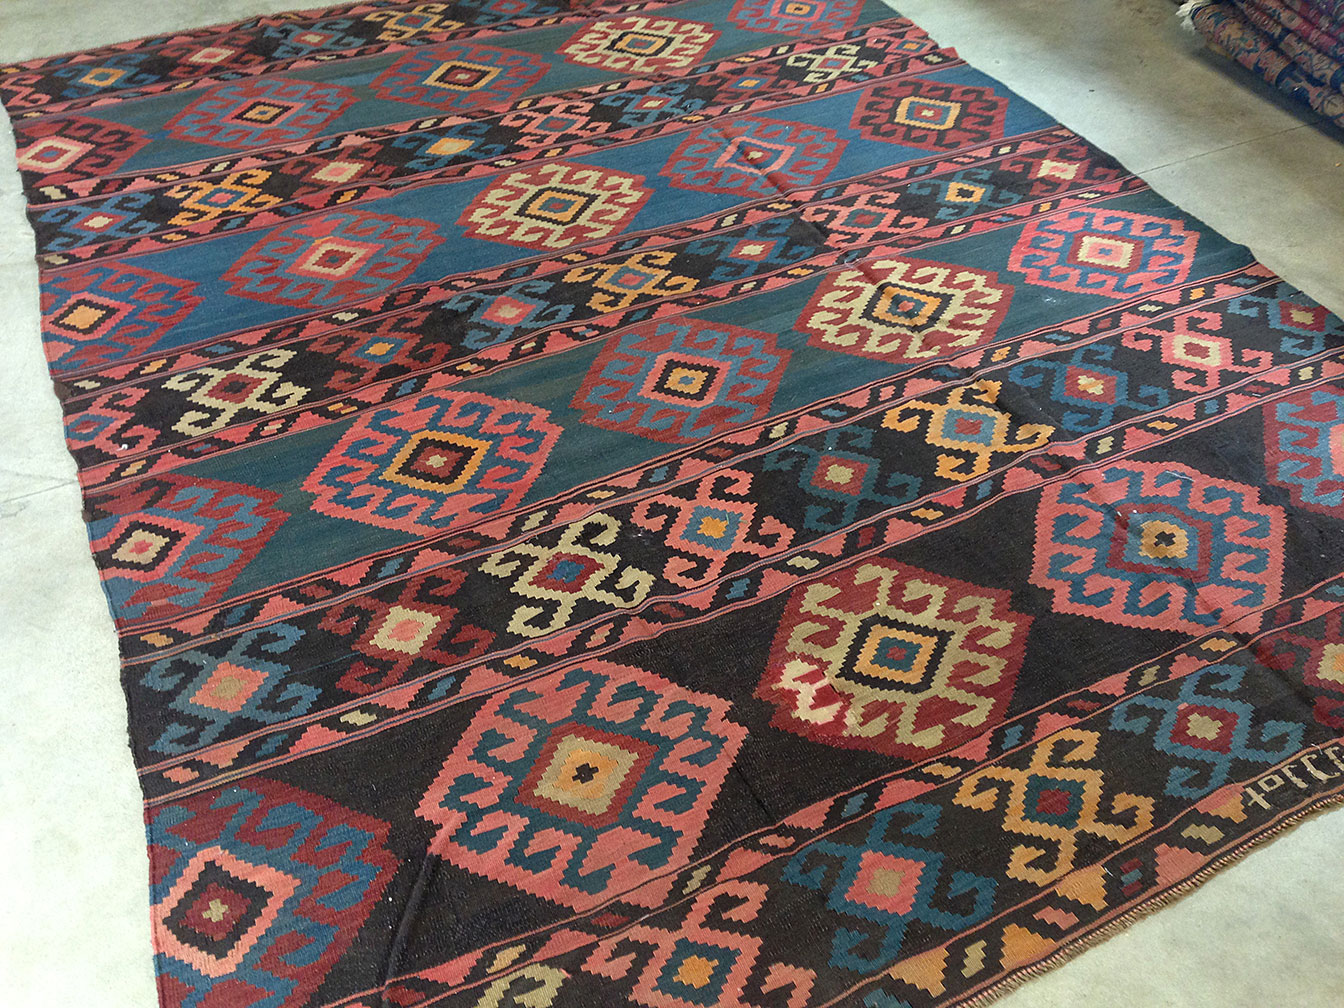 Antique kilim Carpet - # 50427